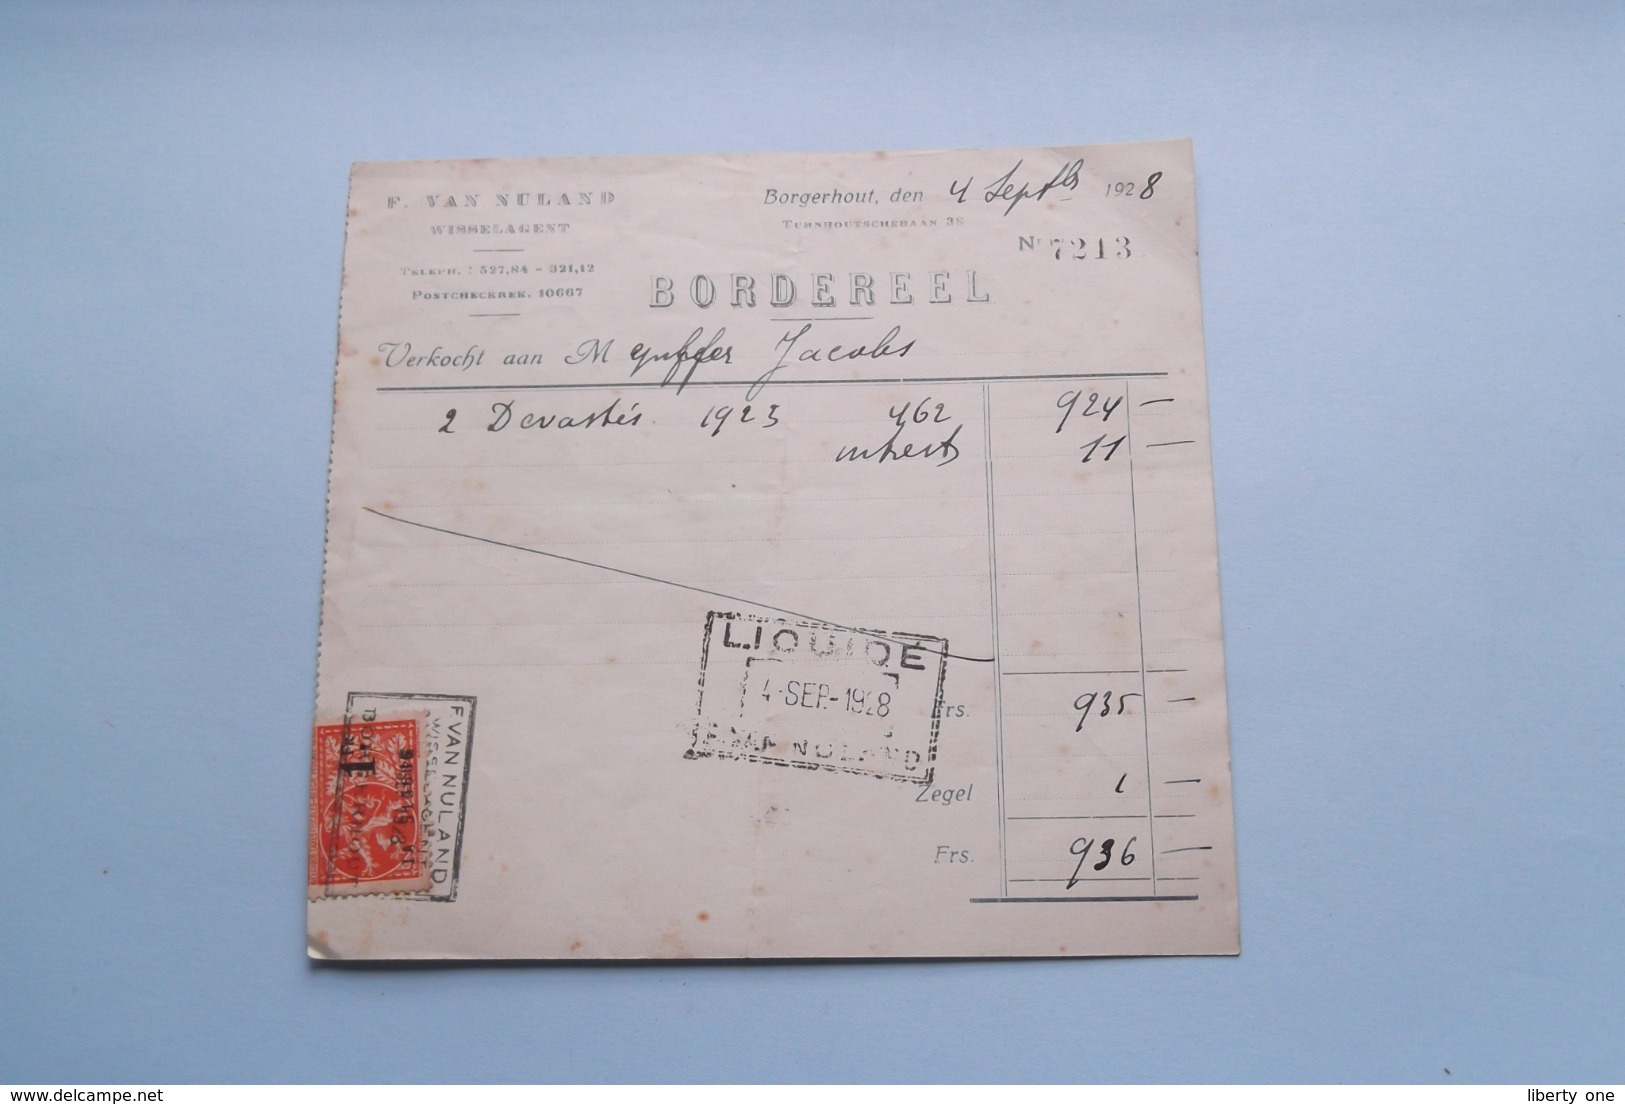 F. Van NULAND WISSELAGENT BORGERHOUT Antwerpen > BORDEREEL Anno 1928 ( Zie Foto's ) 1 Stuk ! - Bank & Insurance